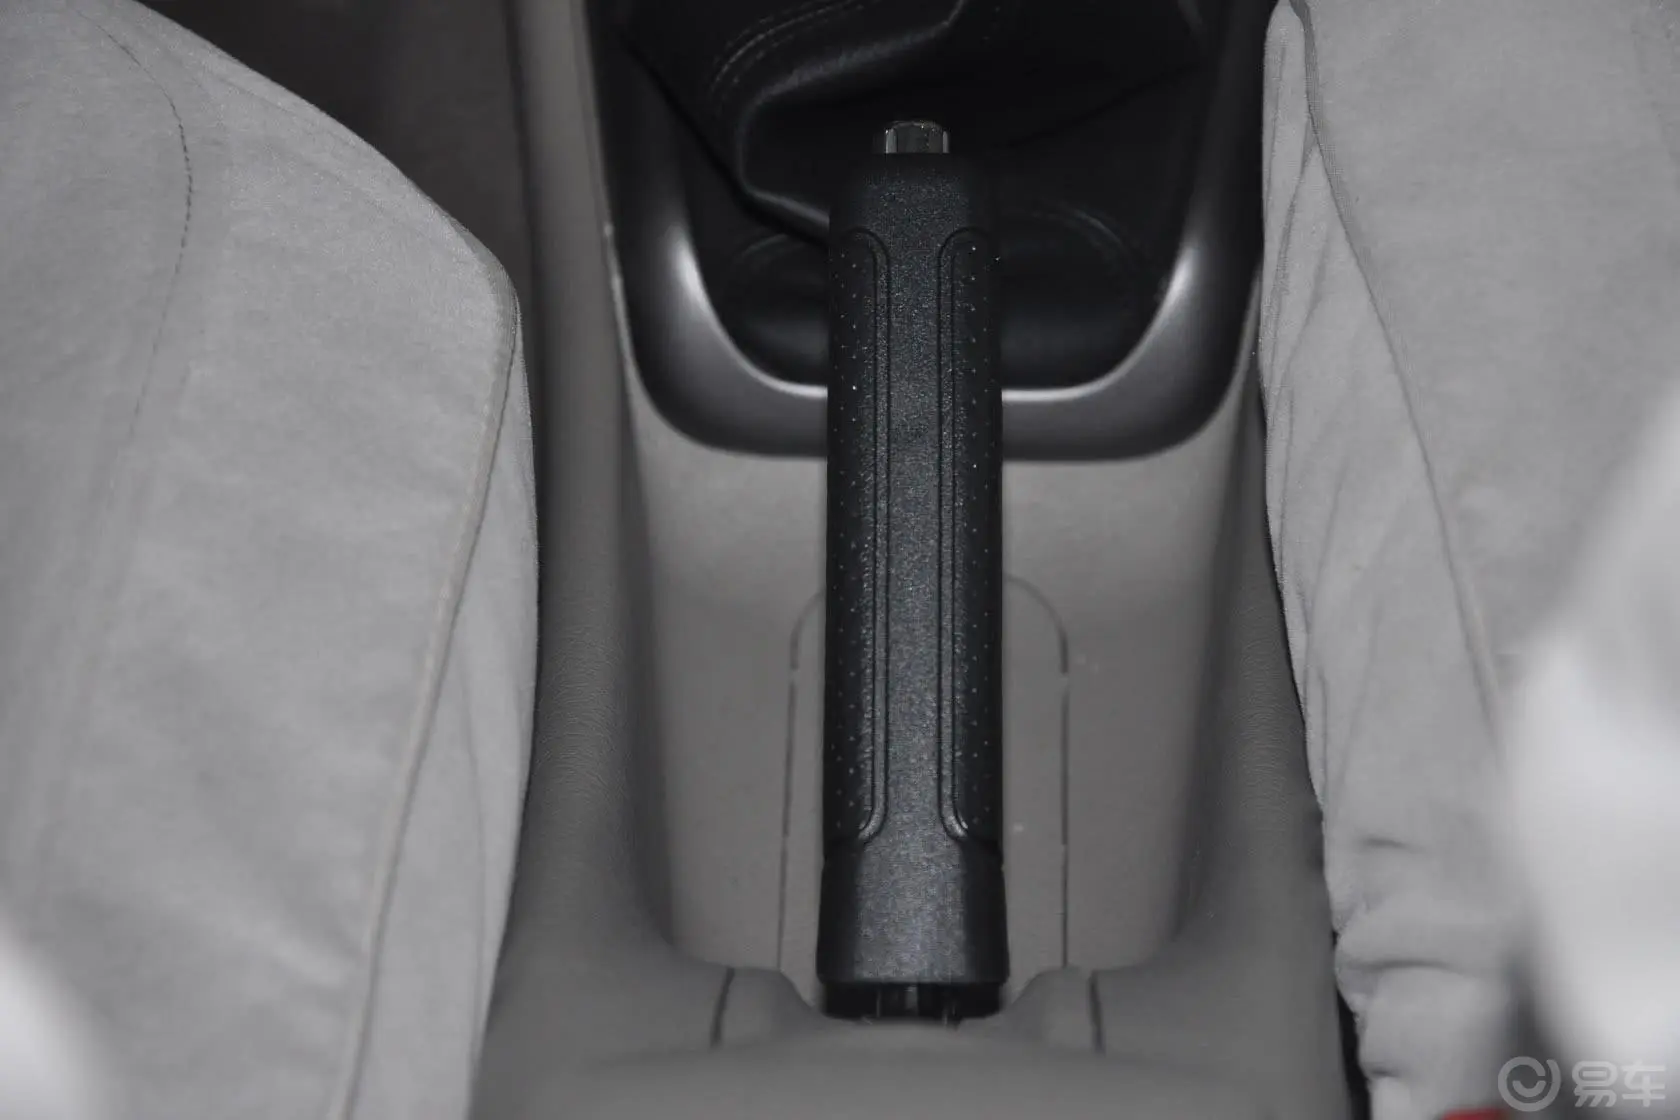 爱丽舍三厢 1.6L 科技型CNG 手动驻车制动（手刹，电子，脚刹）